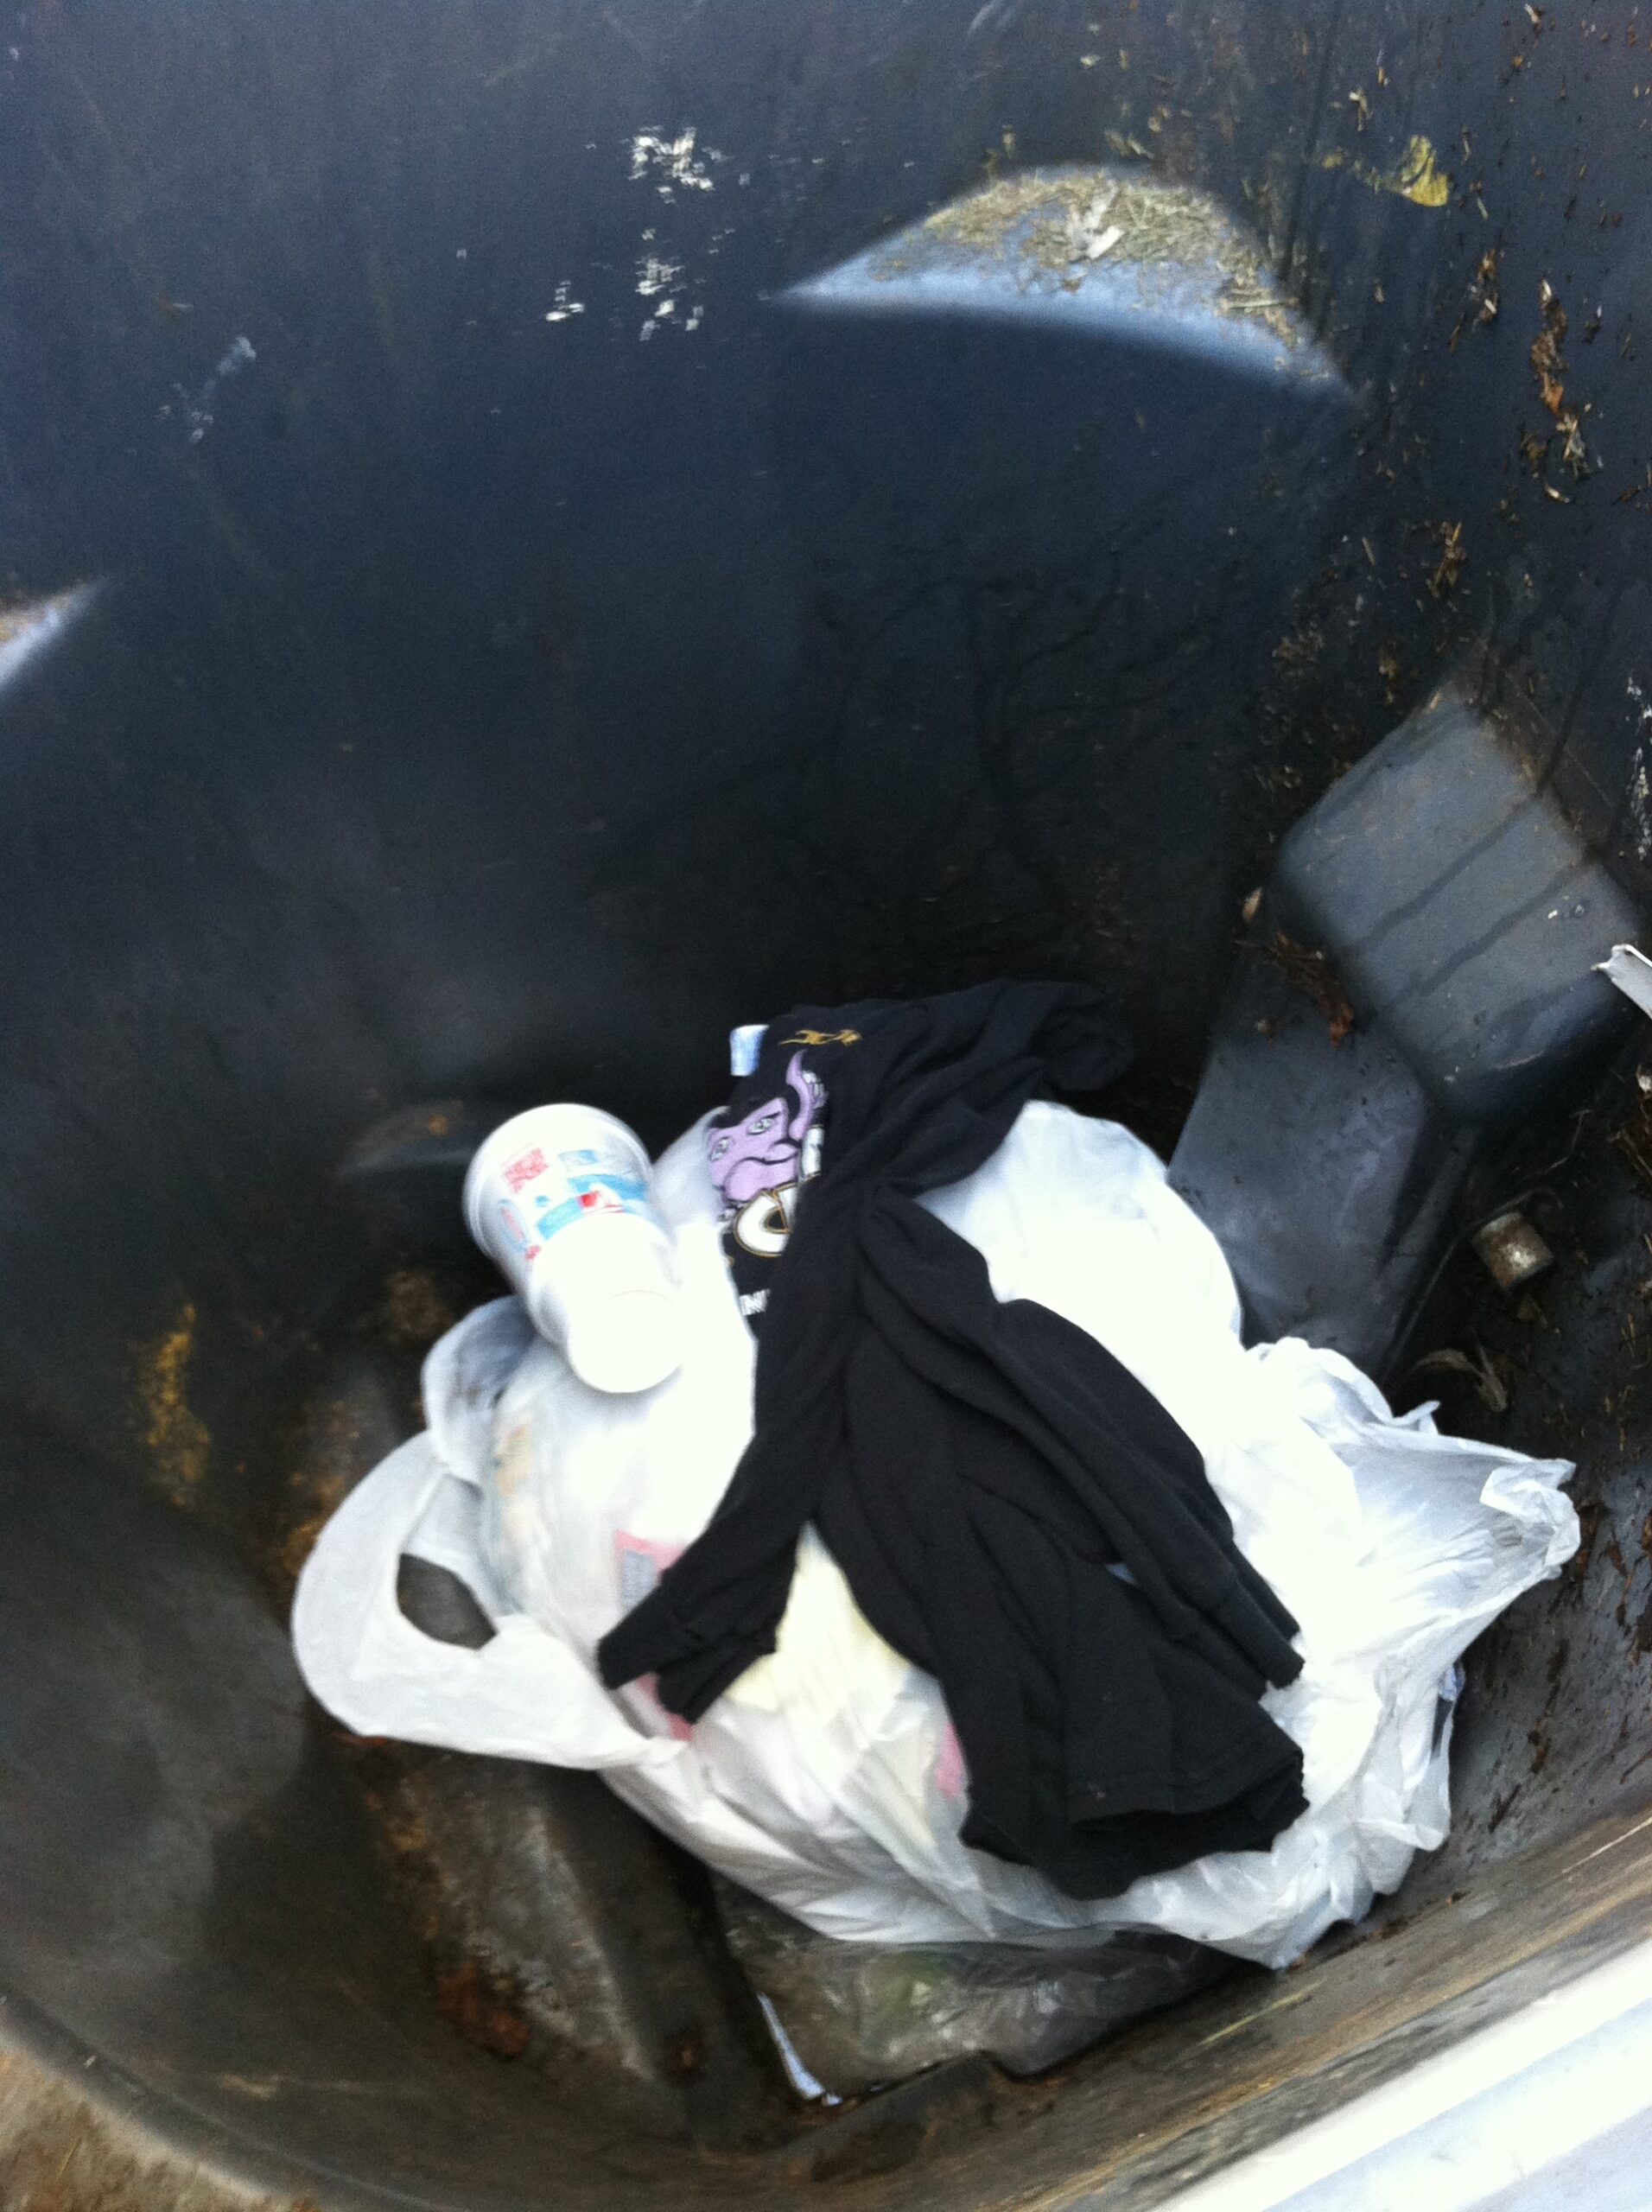 throwing away garbage